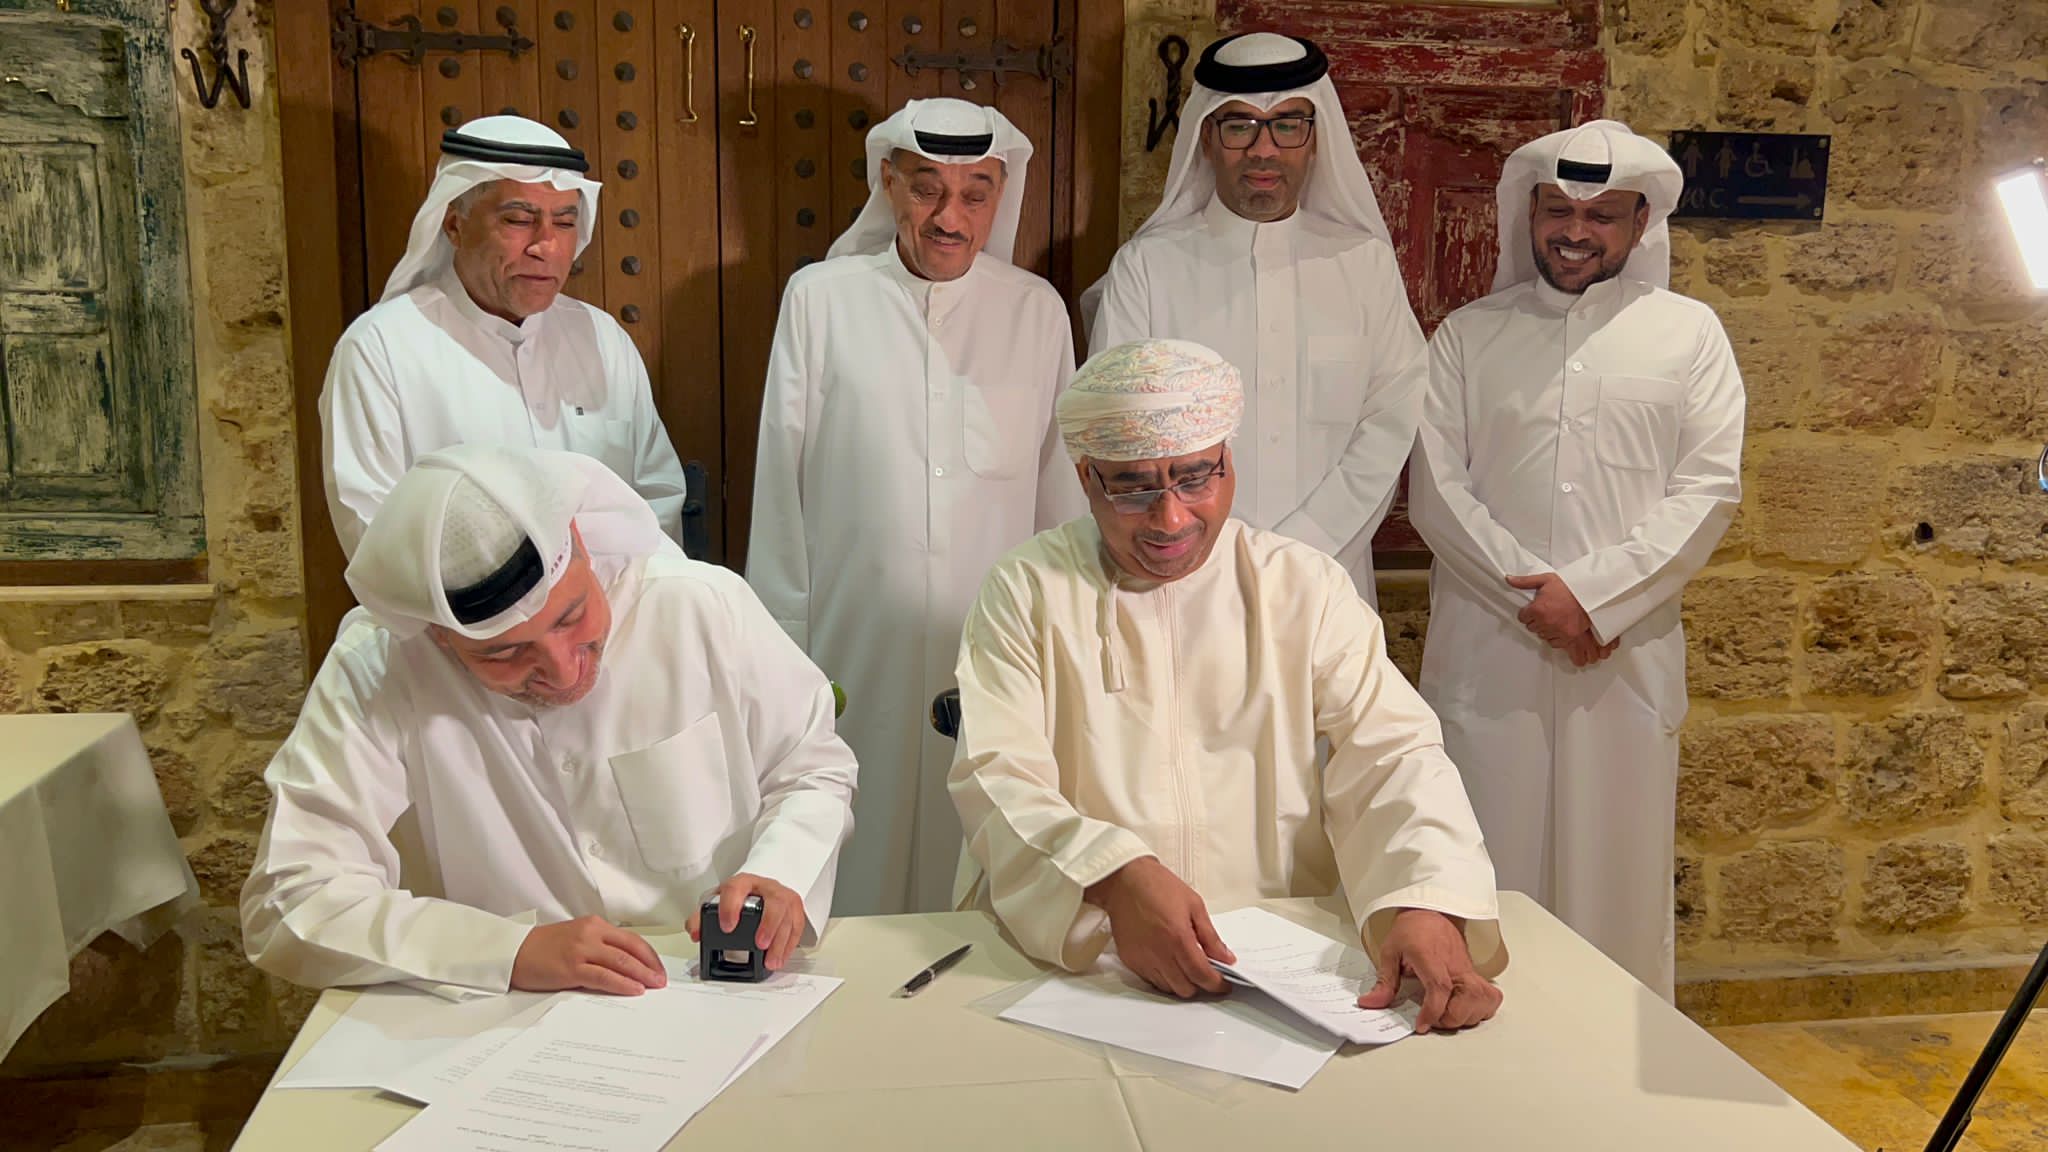 النادي الدولي للإعلام الرياضي يوقع اتفاقية تعاون وشراكة مع اللجنة الكويتية للميني غول